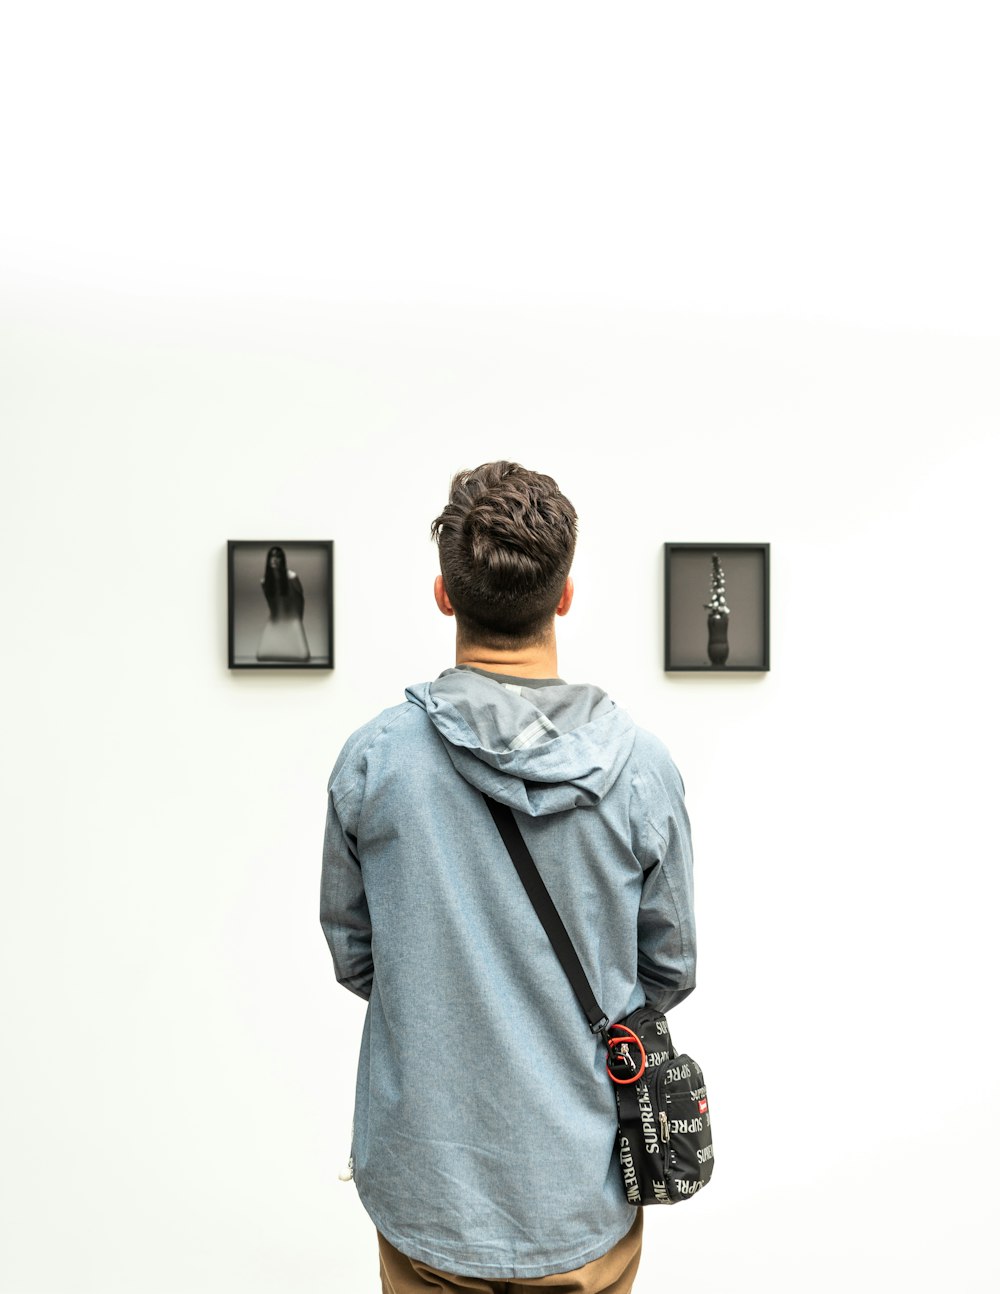 man wearing hoodie looking at artworks